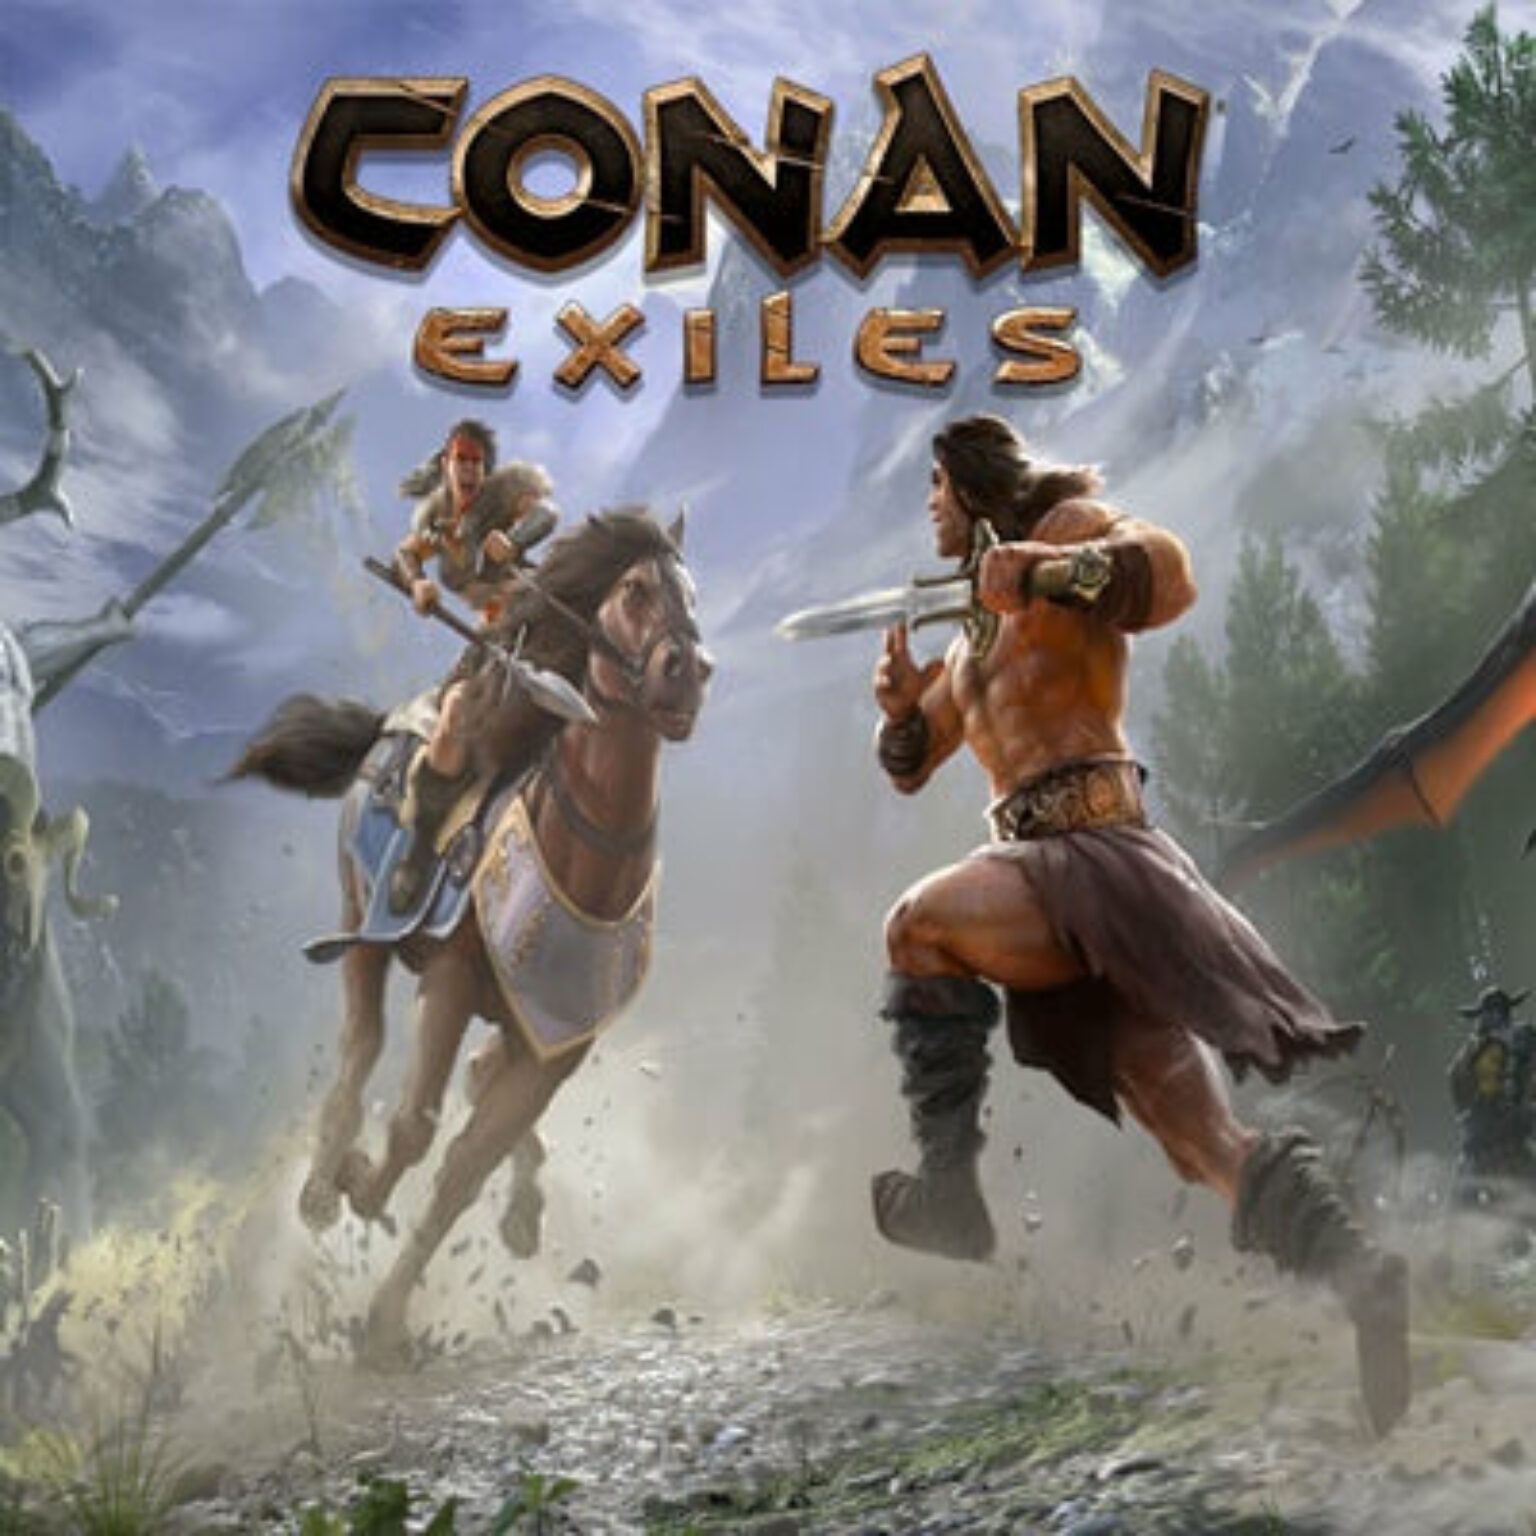 Conan exiles tips and tricks 2022